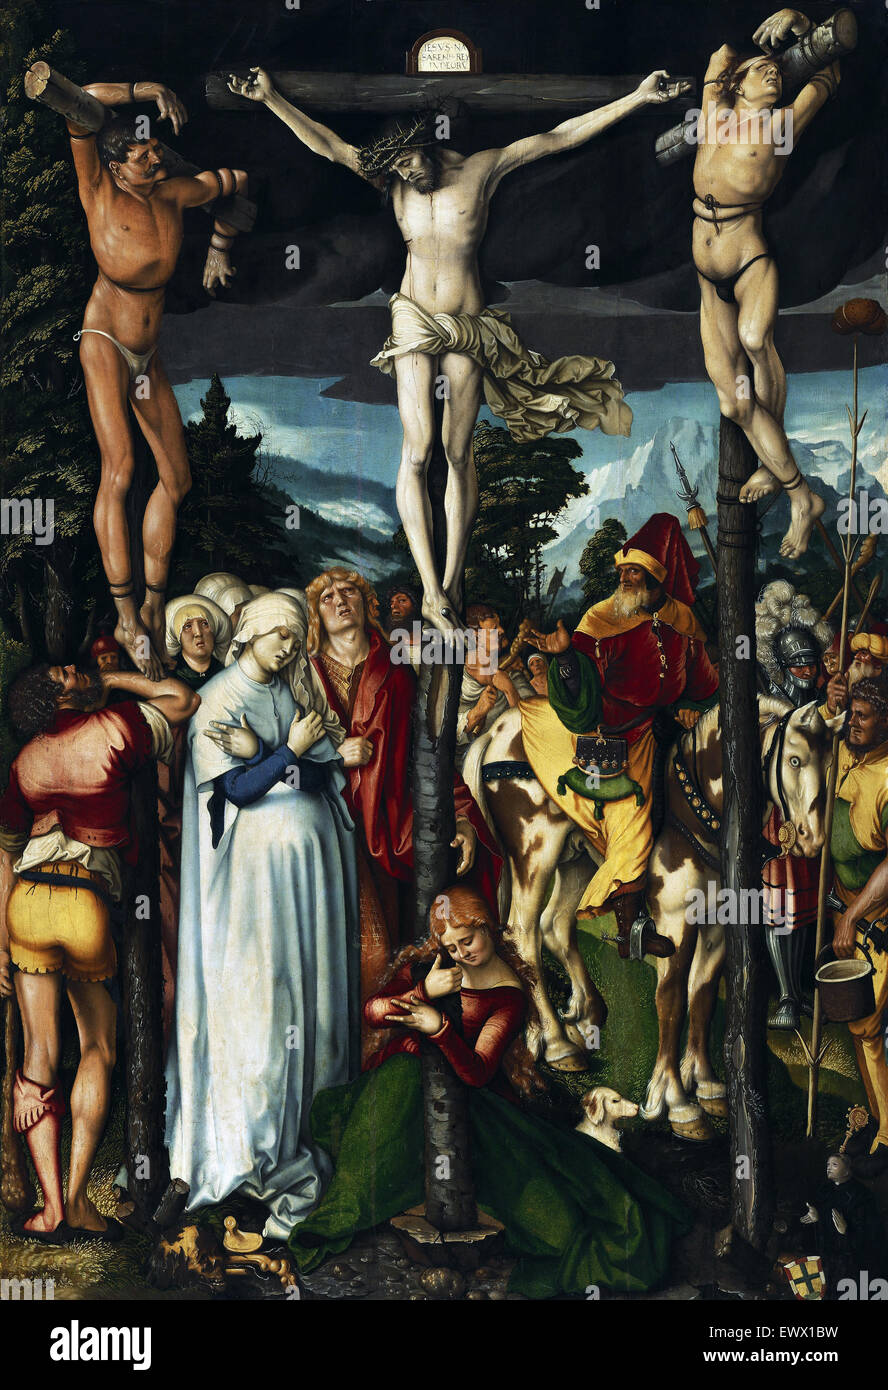 Hans Baldung, la crucifixion du Christ 1512 huile sur tilleul. Gemaldegalerie, Berlin, Allemagne. Banque D'Images